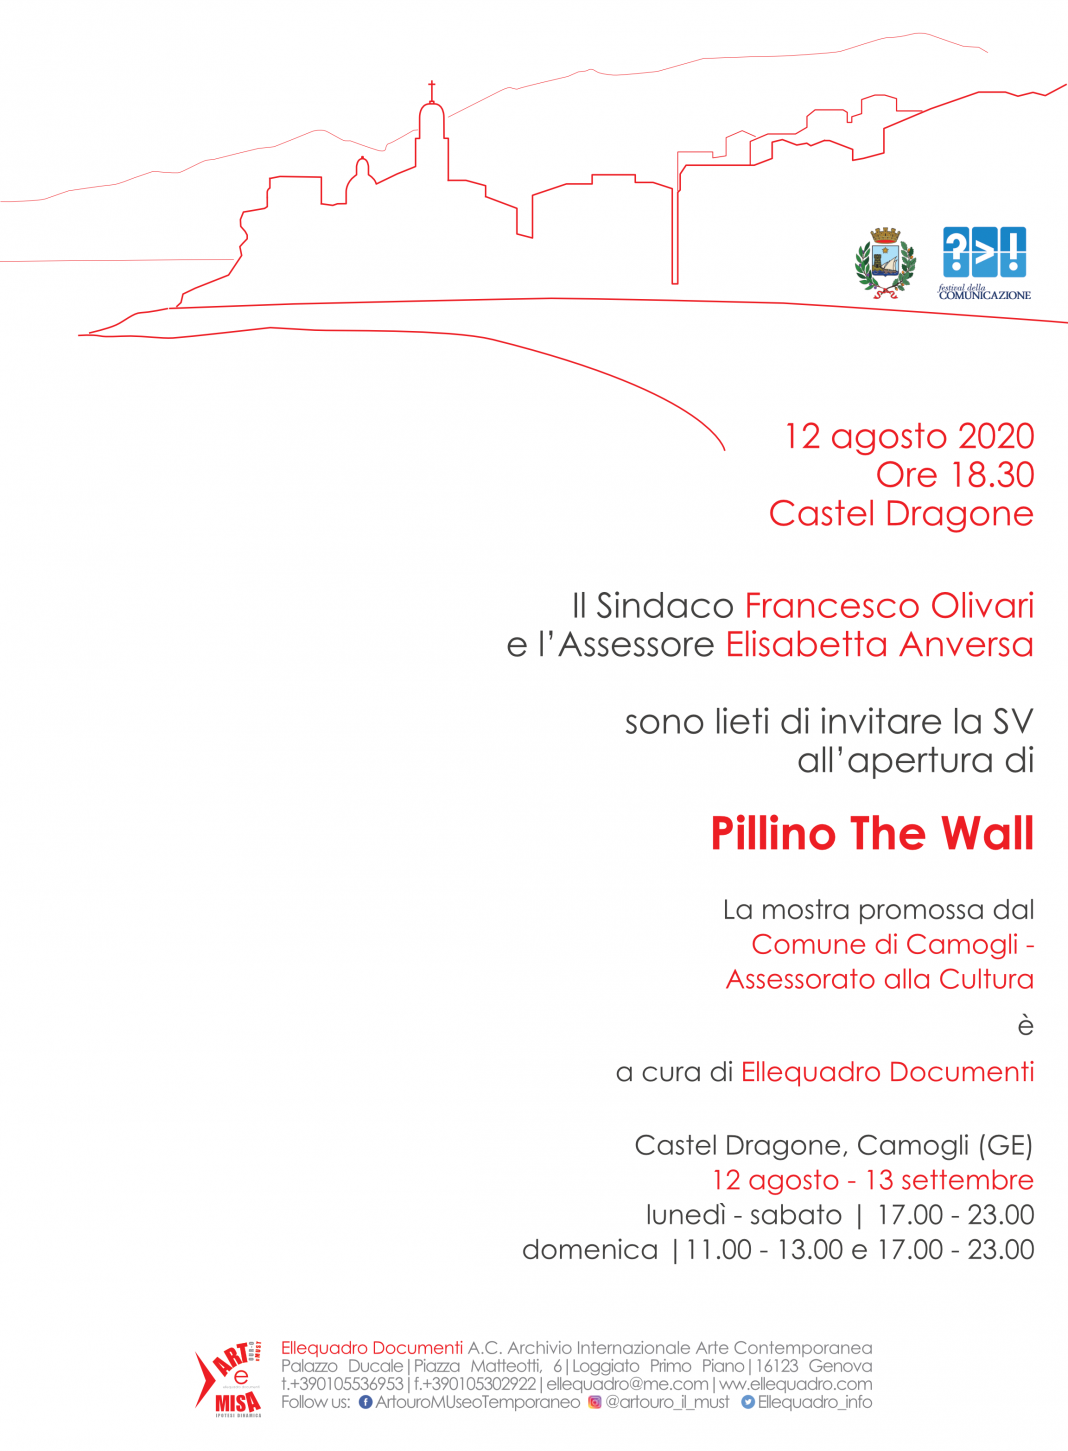 Pillino – The Wallhttps://www.exibart.com/repository/media/formidable/11/Invito-Pillino-Camogli-1068x1451.png